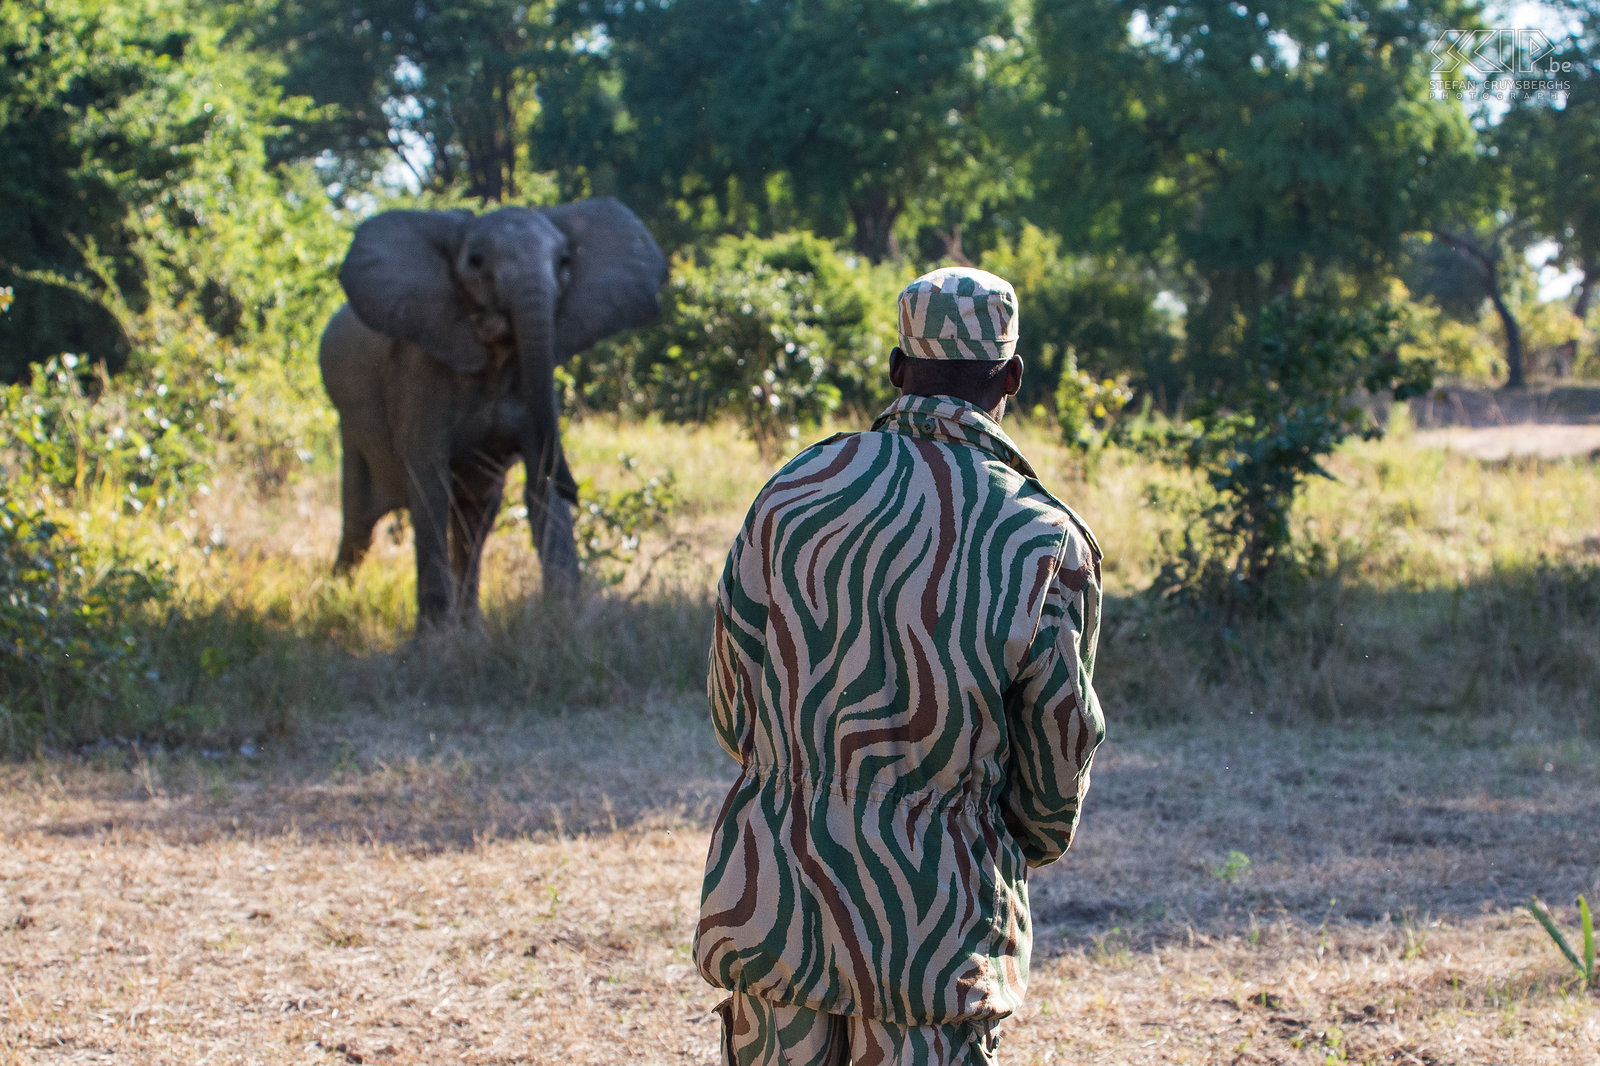 South Luangwa - Olifant aanval tijdens voetsafari South Luangwa park vormt de geboortegrond van de nu overal in Afrika bekende wandelsafari. Wij gingen dus ook een halve dag op wandelsafari met een gids en gewapende scout. ’t Was heel leerrijk en boeiend, avontuurlijk en zelfs even heel spannend. <br />
<br />
Na een uurtje kwamen we een eerste olifant tegen. Deze olifant brieste even bij het zien van ons, maar ging dan toch weg. Kort nadien kwam echter een vrouwtje zonder waarschuwing op ons afgestormd. Olifanten zonder slagtijden zijn vaak agressiever dan anderen. De ranger moest een waarschuwingsschot lossen om haar te stoppen. Iets heel uitzonderlijk, maar gelukkig was het voldoende om haar rechtsomkeer te laten maken. <br />
 Stefan Cruysberghs